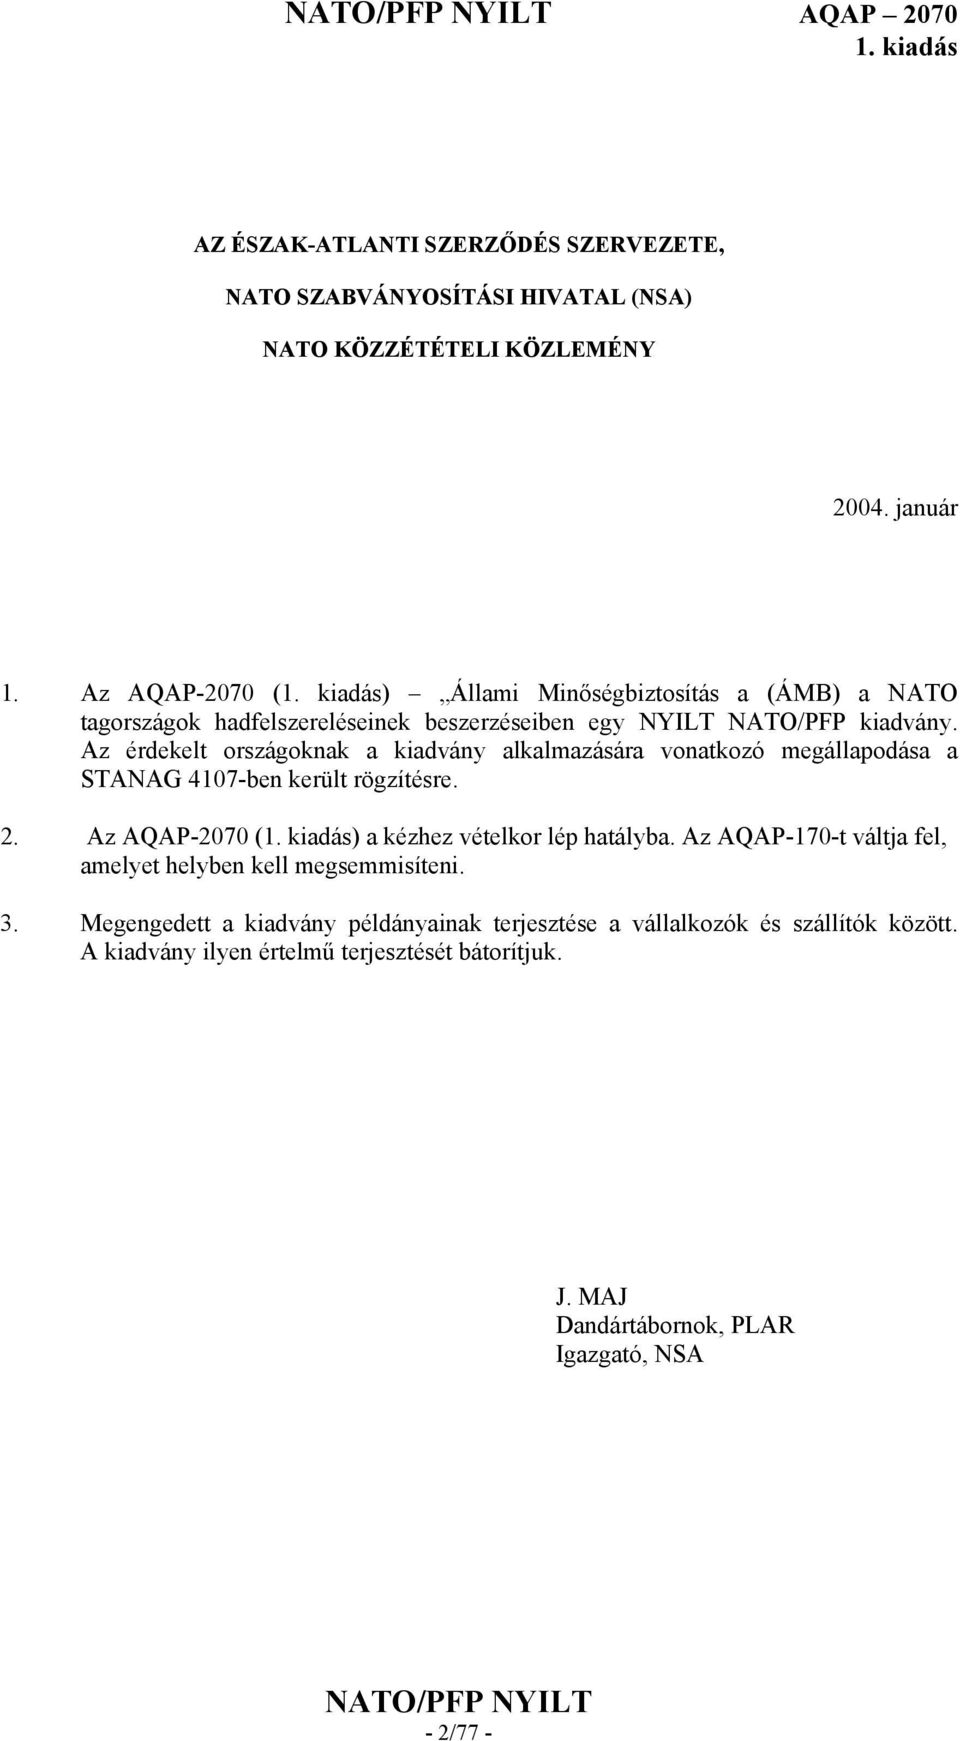 Az érdekelt országoknak a kiadvány alkalmazására vonatkozó megállapodása a STANAG 4107-ben került rögzítésre. 2. Az AQAP-2070 () a kézhez vételkor lép hatályba.